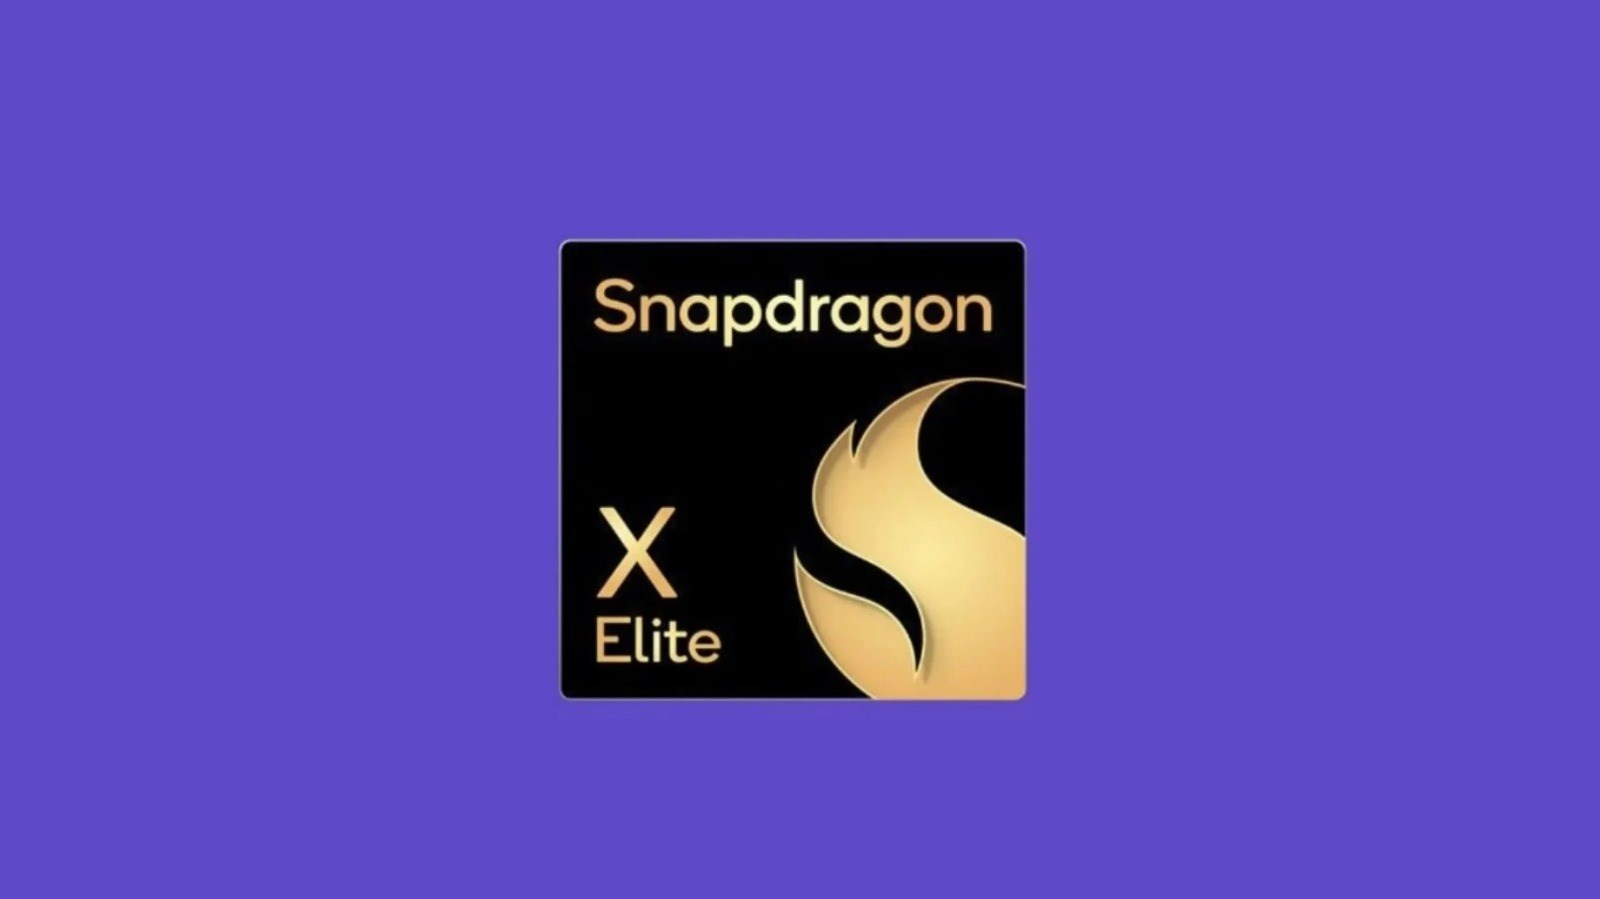 Snapdragon X Elite, Apple M2 işlemci ile karşılaştırıldı